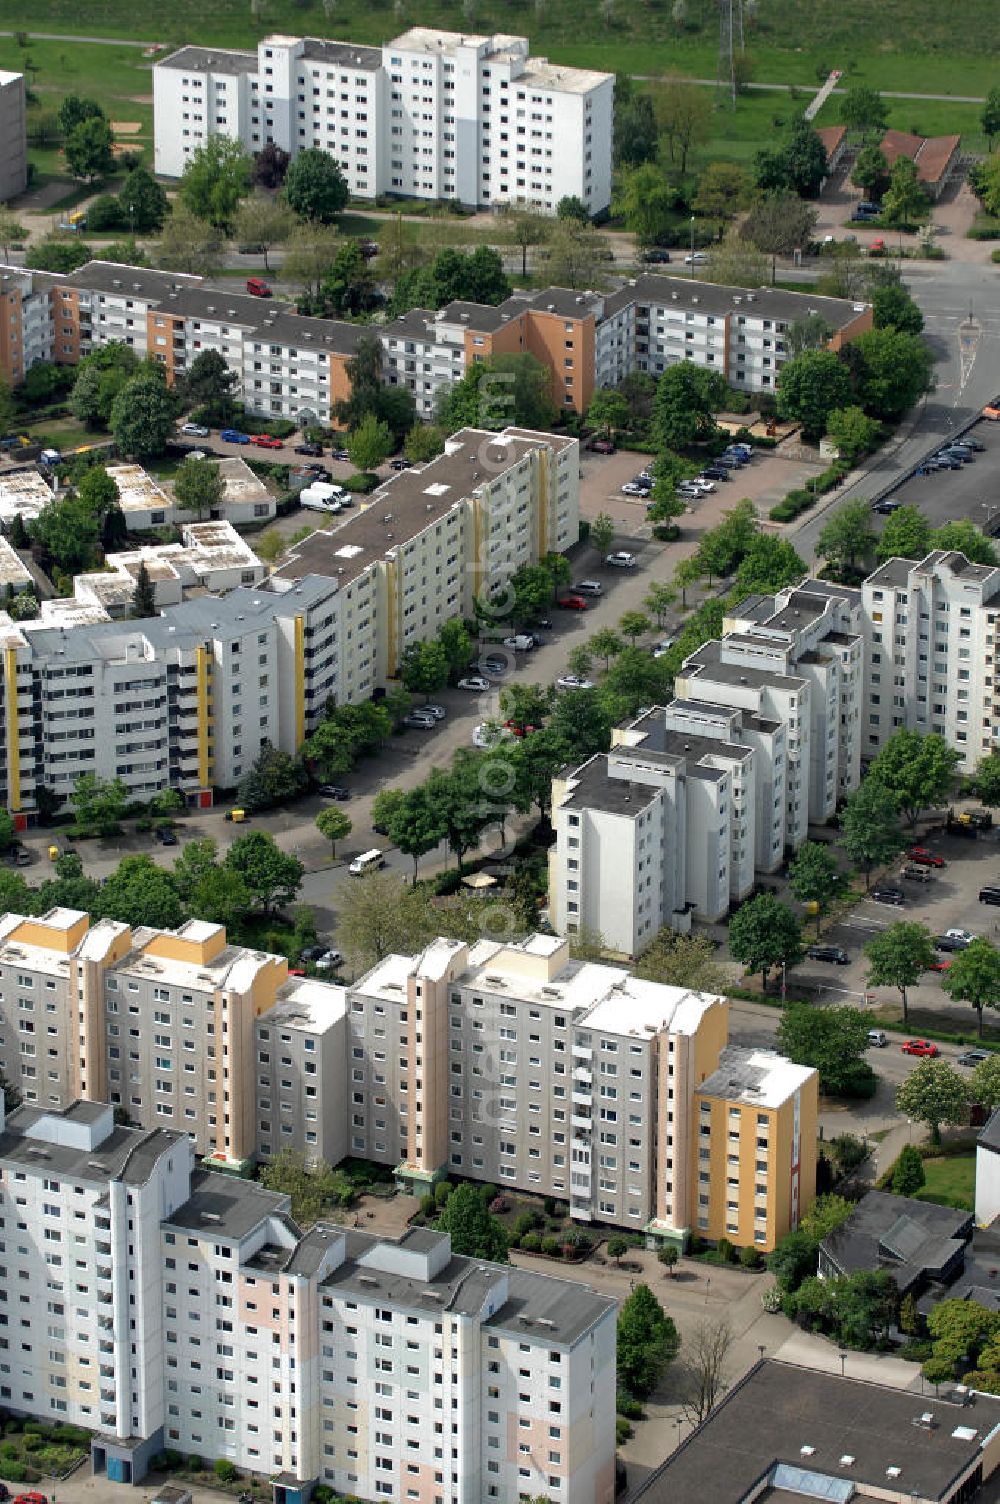 Aerial photograph Wolfsburg - Blick auf das Wohngebiet an der Jenaer Straße im Stadtteil Westhagen. View of the residential area at the Jenaer Straße in the district Westhagen.